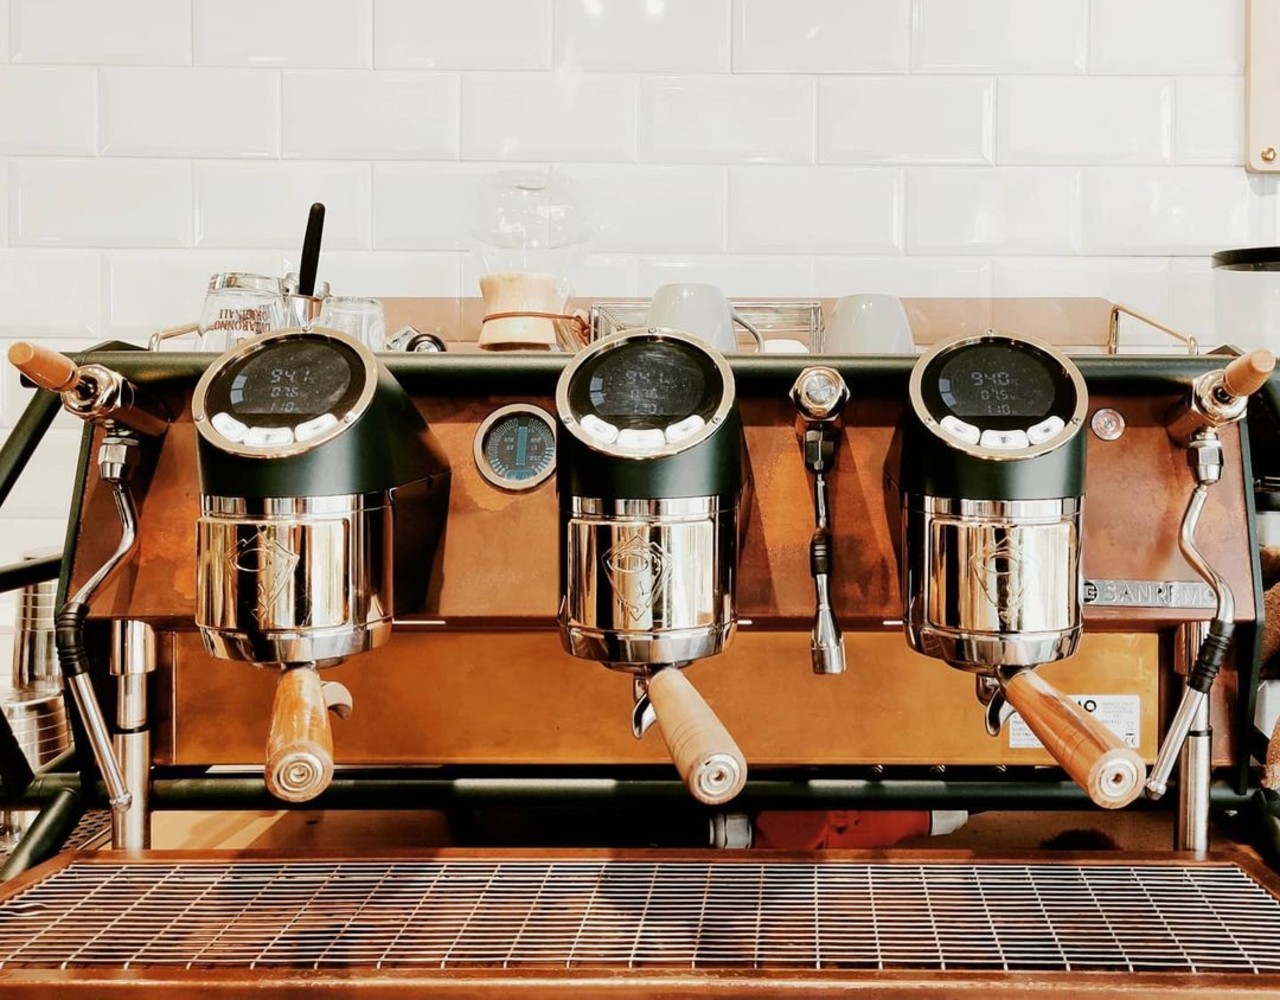 Το Milligram στο Παλαιό Φάληρο πάει τον καφέ σε άλλο επίπεδο